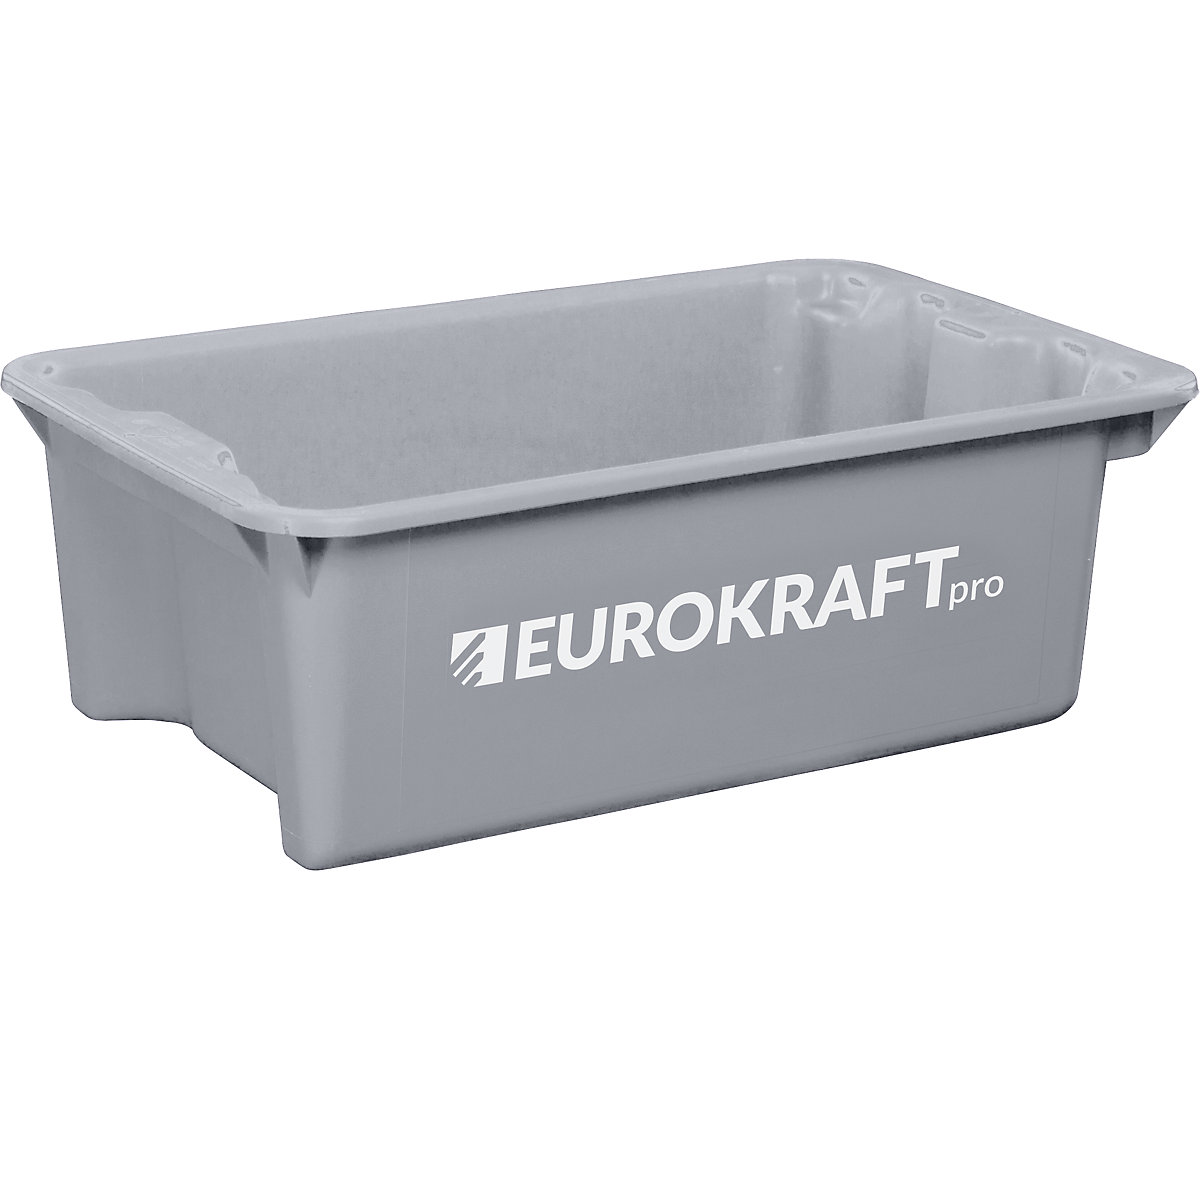 Otočná stohovací nádoba z polypropylenu vhodného pro potraviny – eurokraft pro, objem 34 l, bal.j. 3 ks, stěny a dno plné, šedá